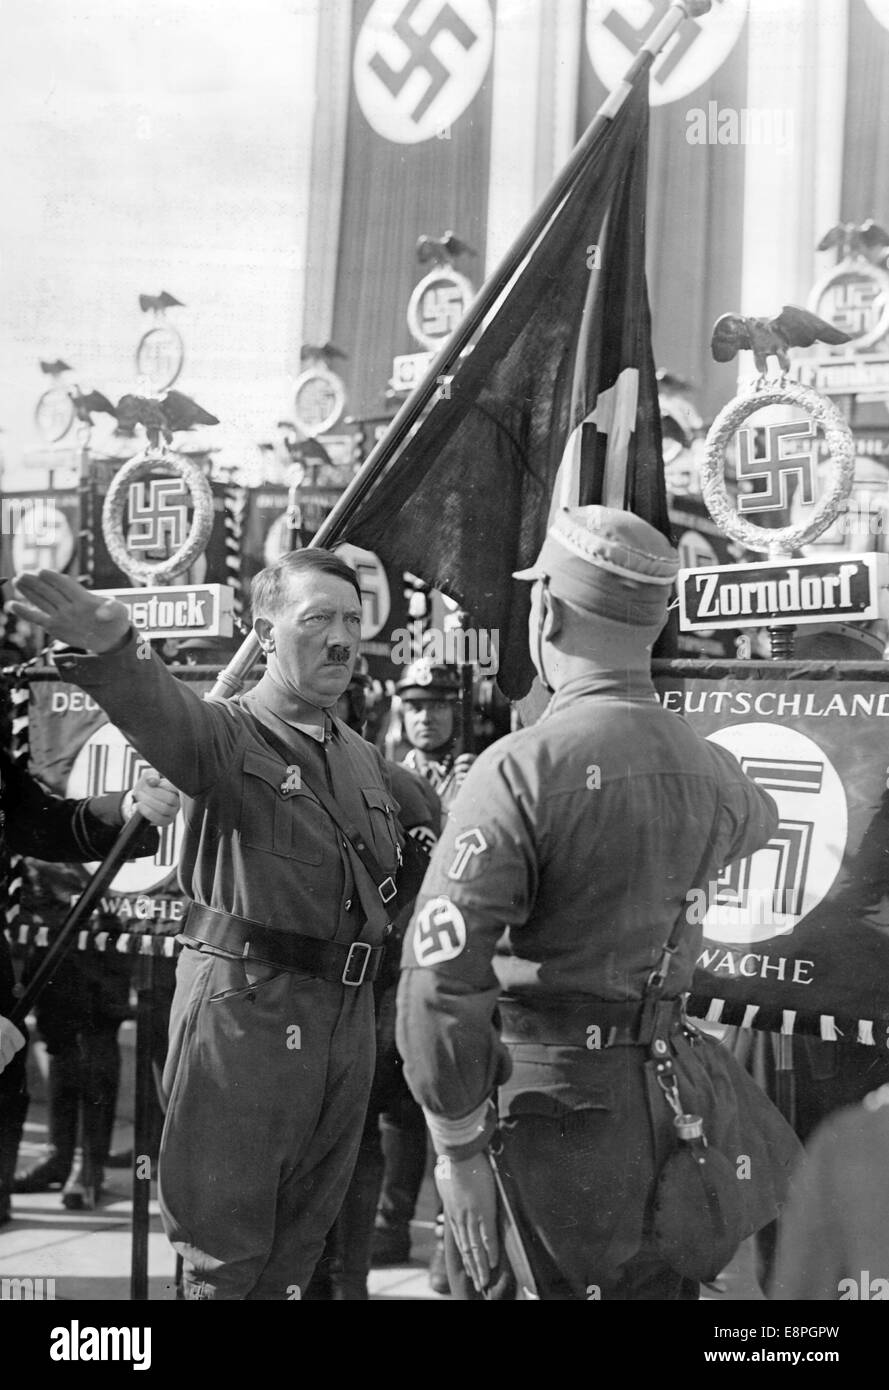 Nürnberger Rallye 1936 in Nürnberg – Neue Standards werden von Adolf Hitler während des großen Appells der Sturmtruppe (SA), Schutzstaffel (SS) und des Nationalen Sozialistischen Kfz-Korps (NSKK) in Luitpoldarena auf dem Nazi-Parteigelände mit der „Blutflagge“ (hinter Hitler) geweiht. Neue Standards von SA und SS wurden "geweiht", indem sie mit der "Blutflagge" verbunden wurden, die angeblich in der gescheiterten Bierhalle Putsch getragen wurde. (Qualitätsmängel aufgrund der historischen Bildkopie) Fotoarchiv für Zeitgeschichtee - KEIN KABELDIENST - Stockfoto